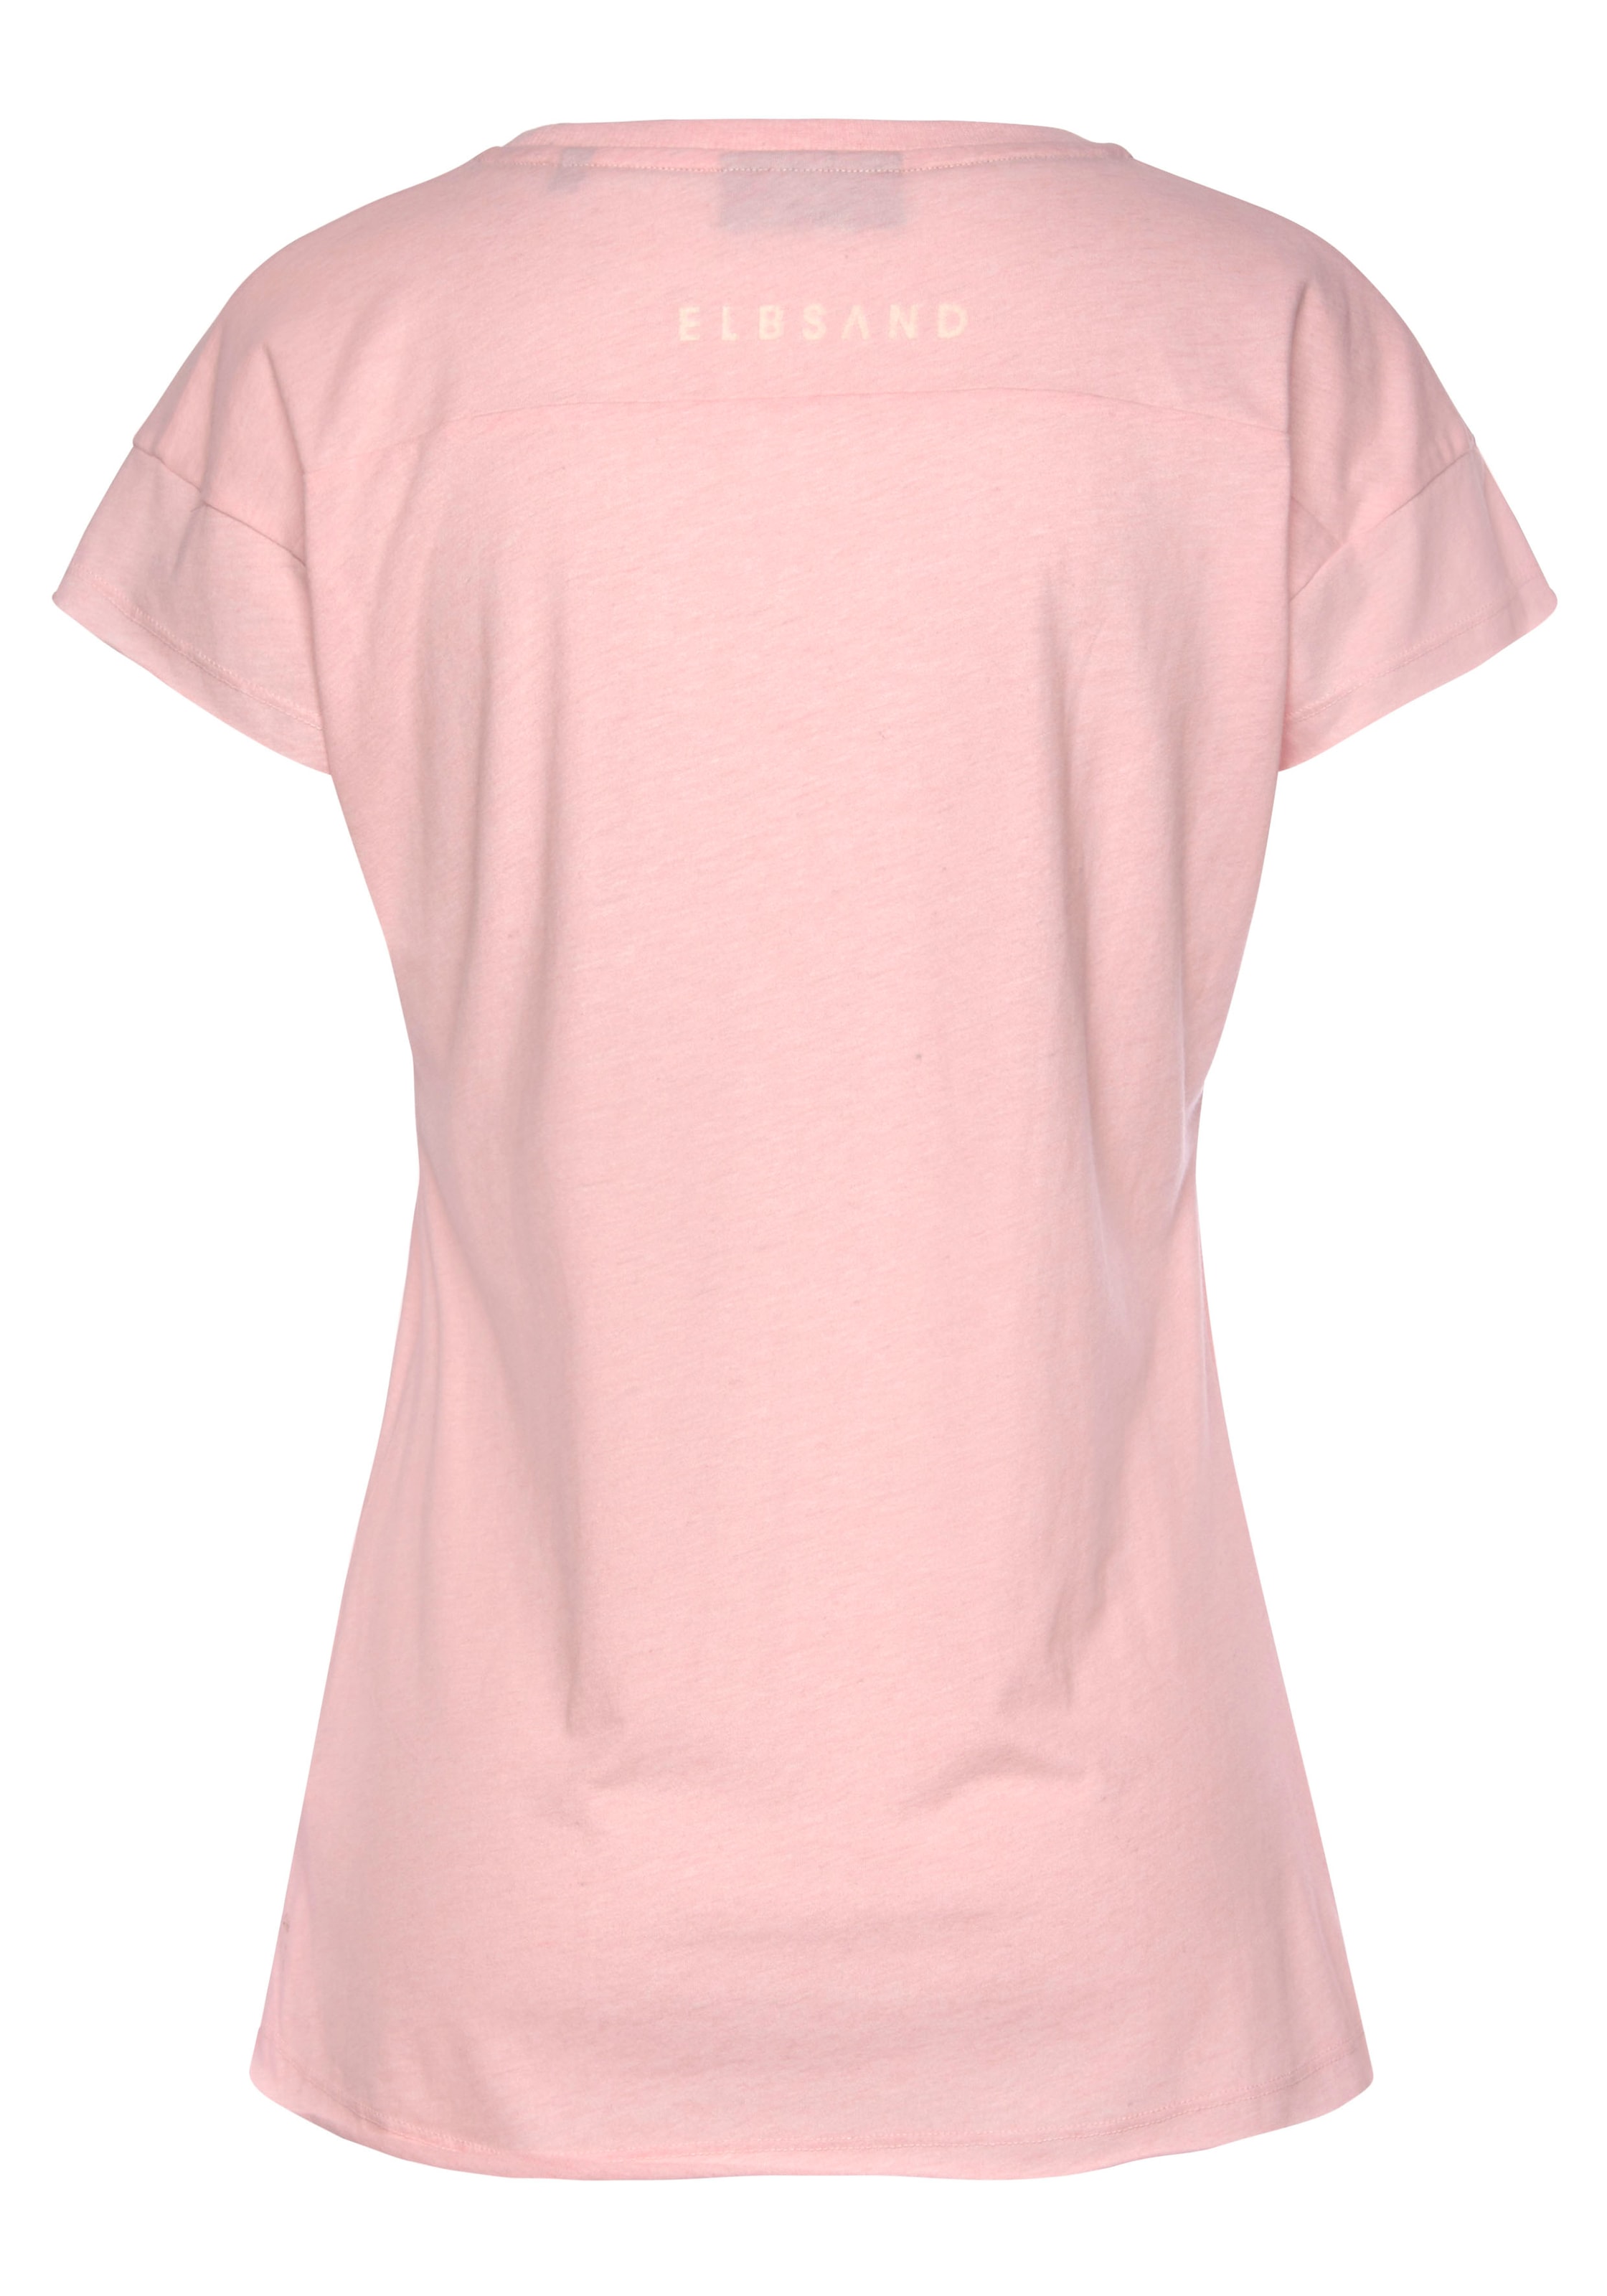 T-Shirt Shop Kurzarmshirt mit Elbsand sportlich aus Baumwoll-Mix, im Online »Ranva«, Logodruck, OTTO